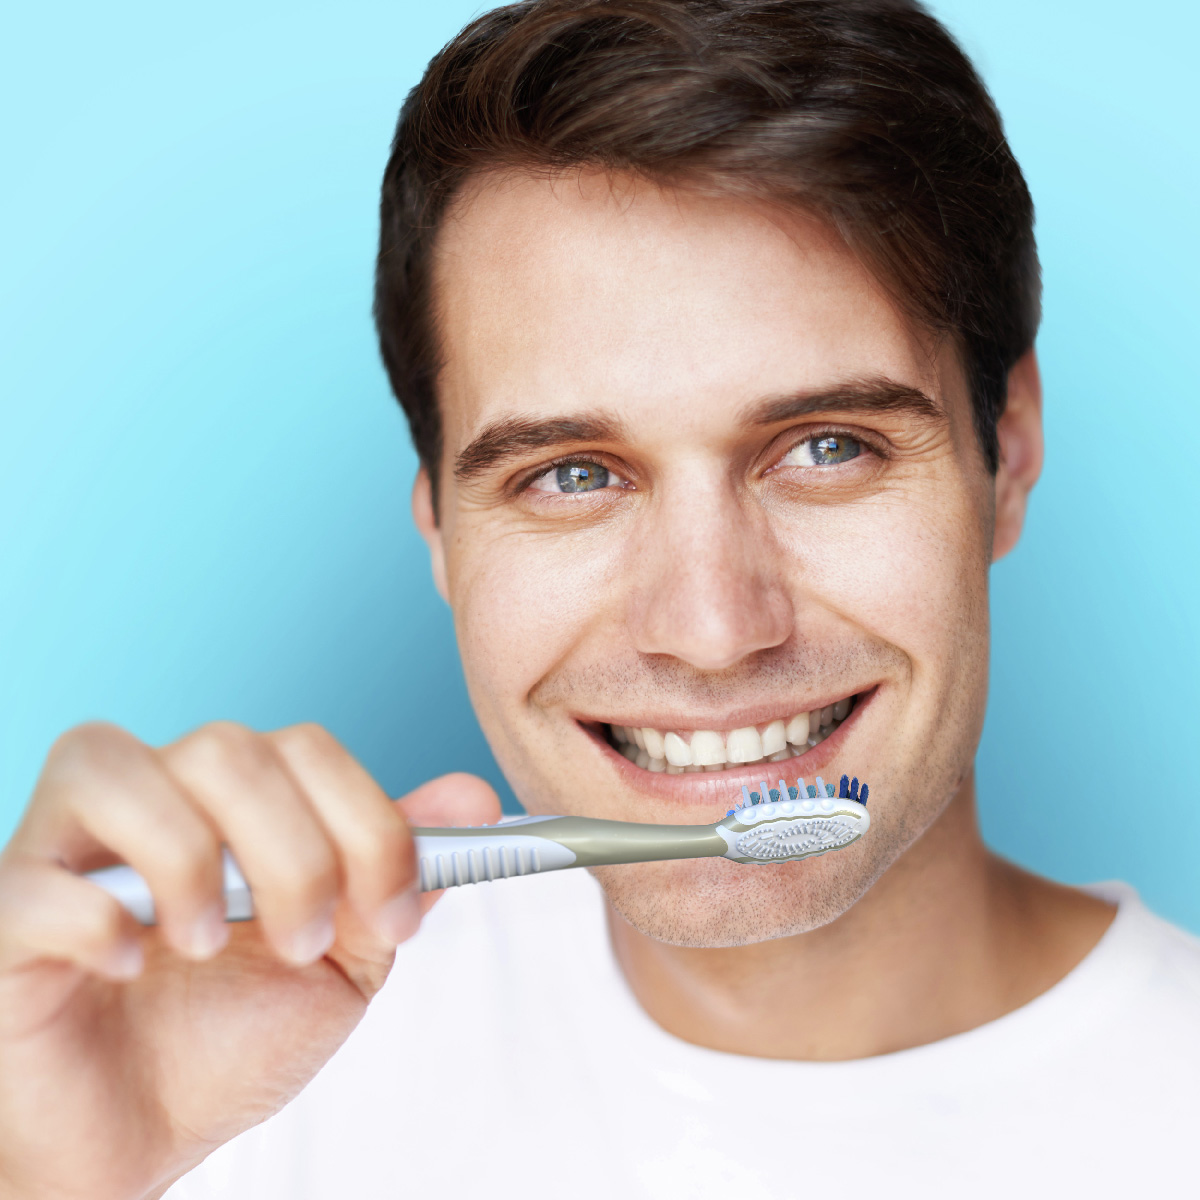 Oral B Super Floss hilo dental para aparatos e implantes dentales